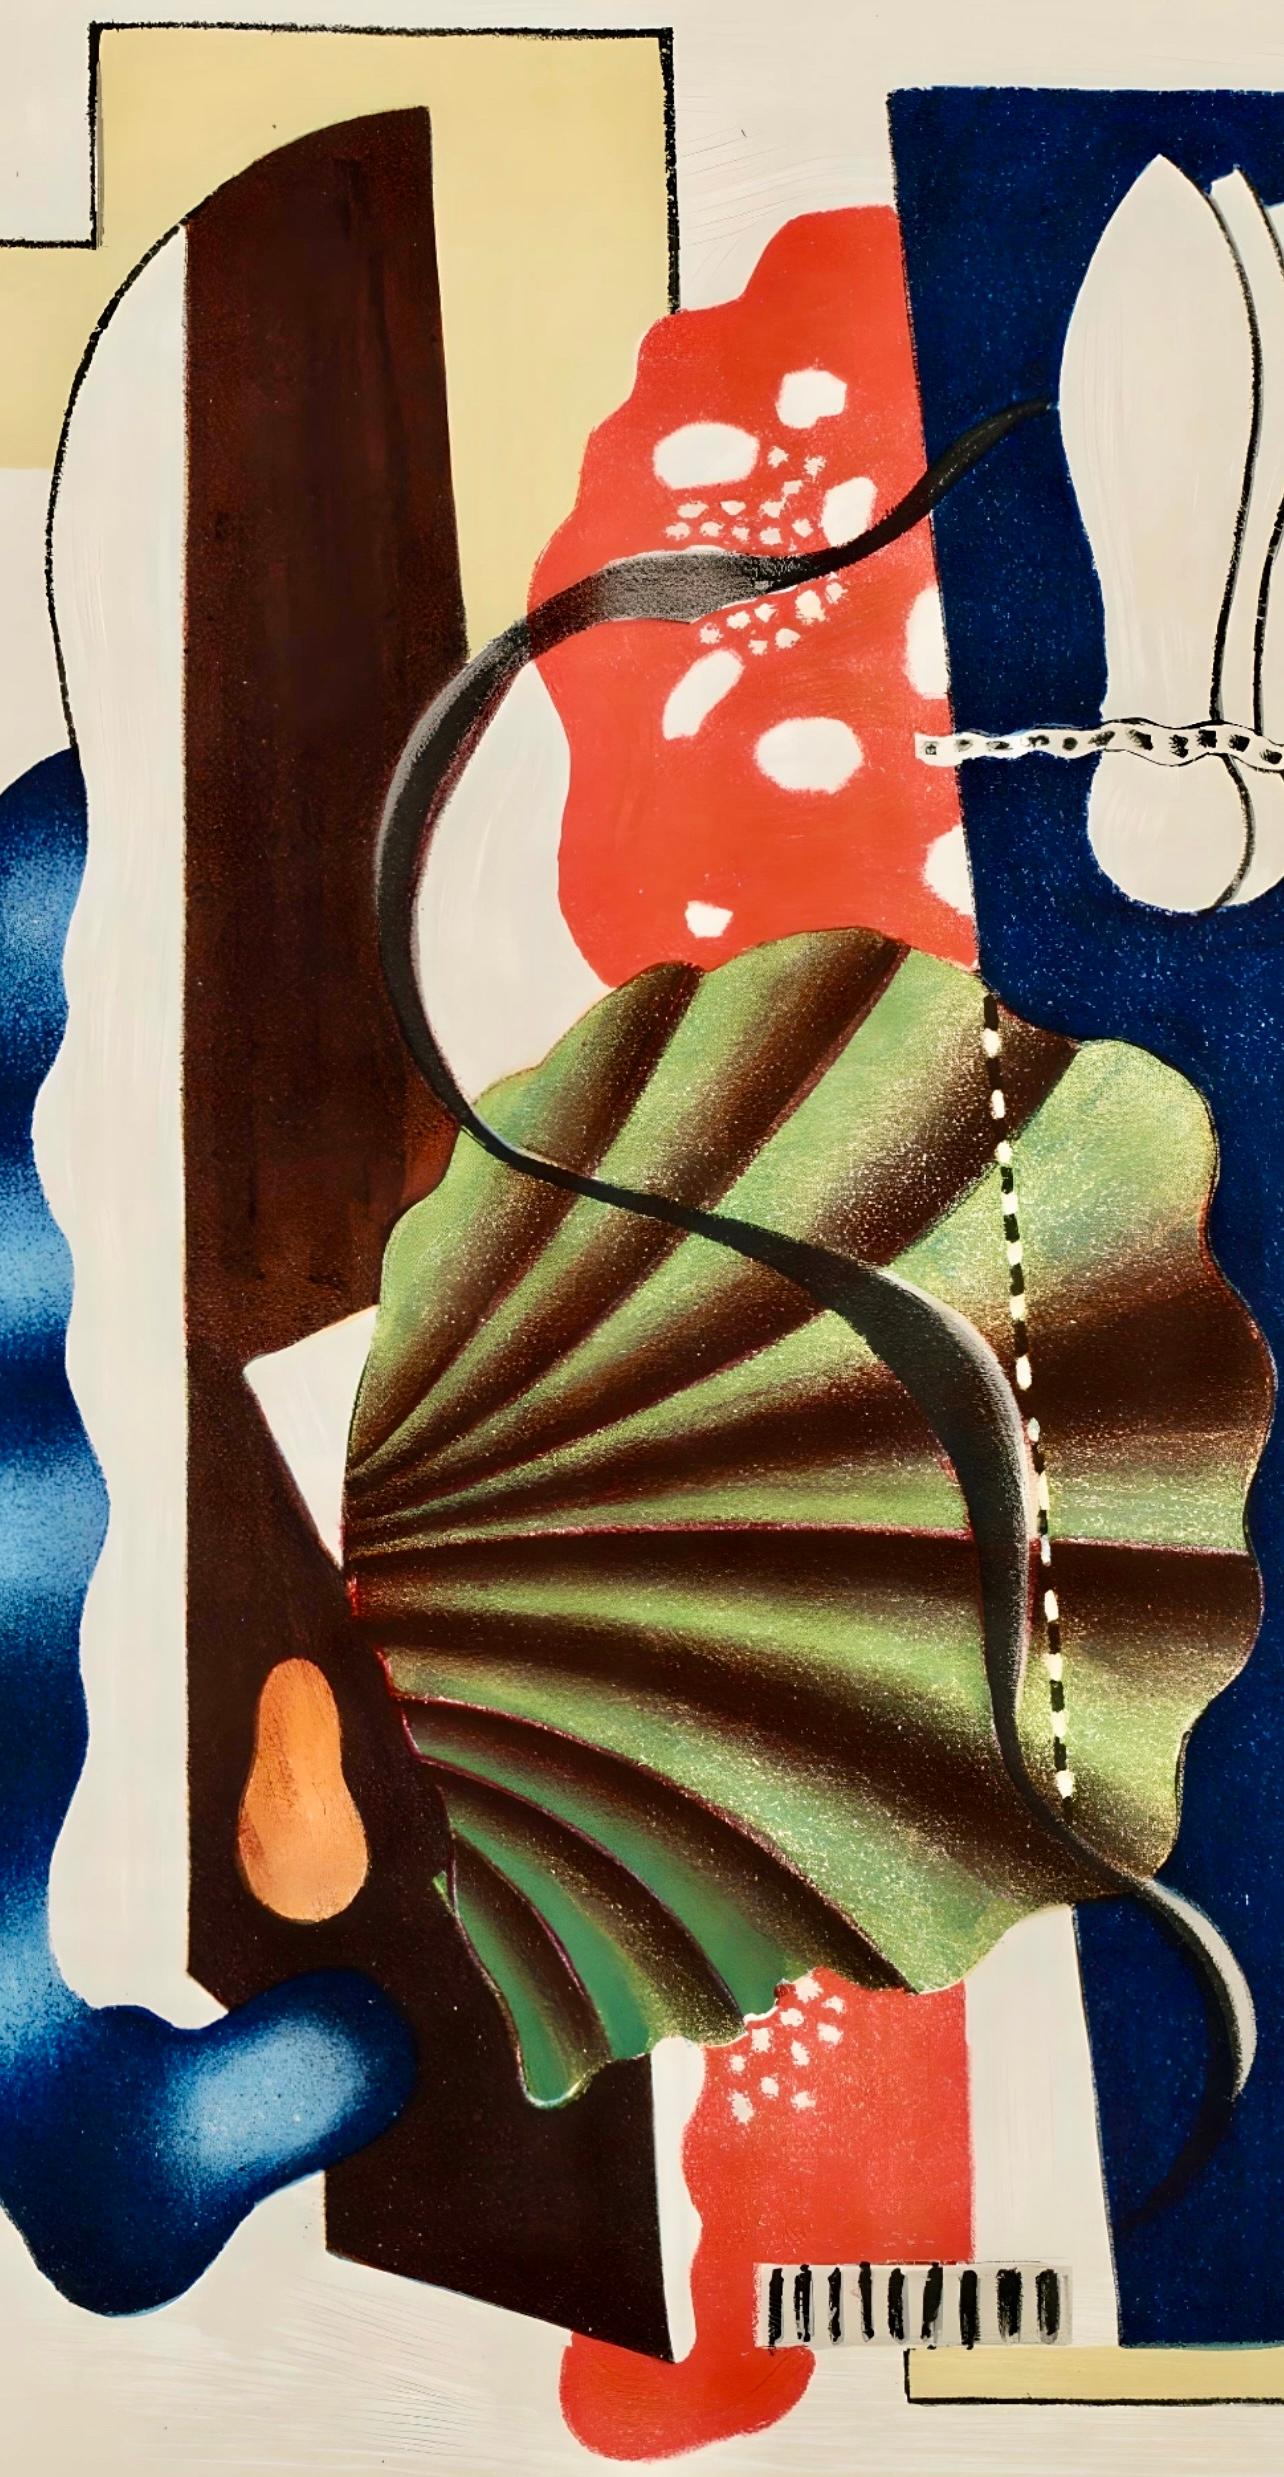 Léger, Nature morte, Derrière le miroir (after) - Print by Fernand Léger